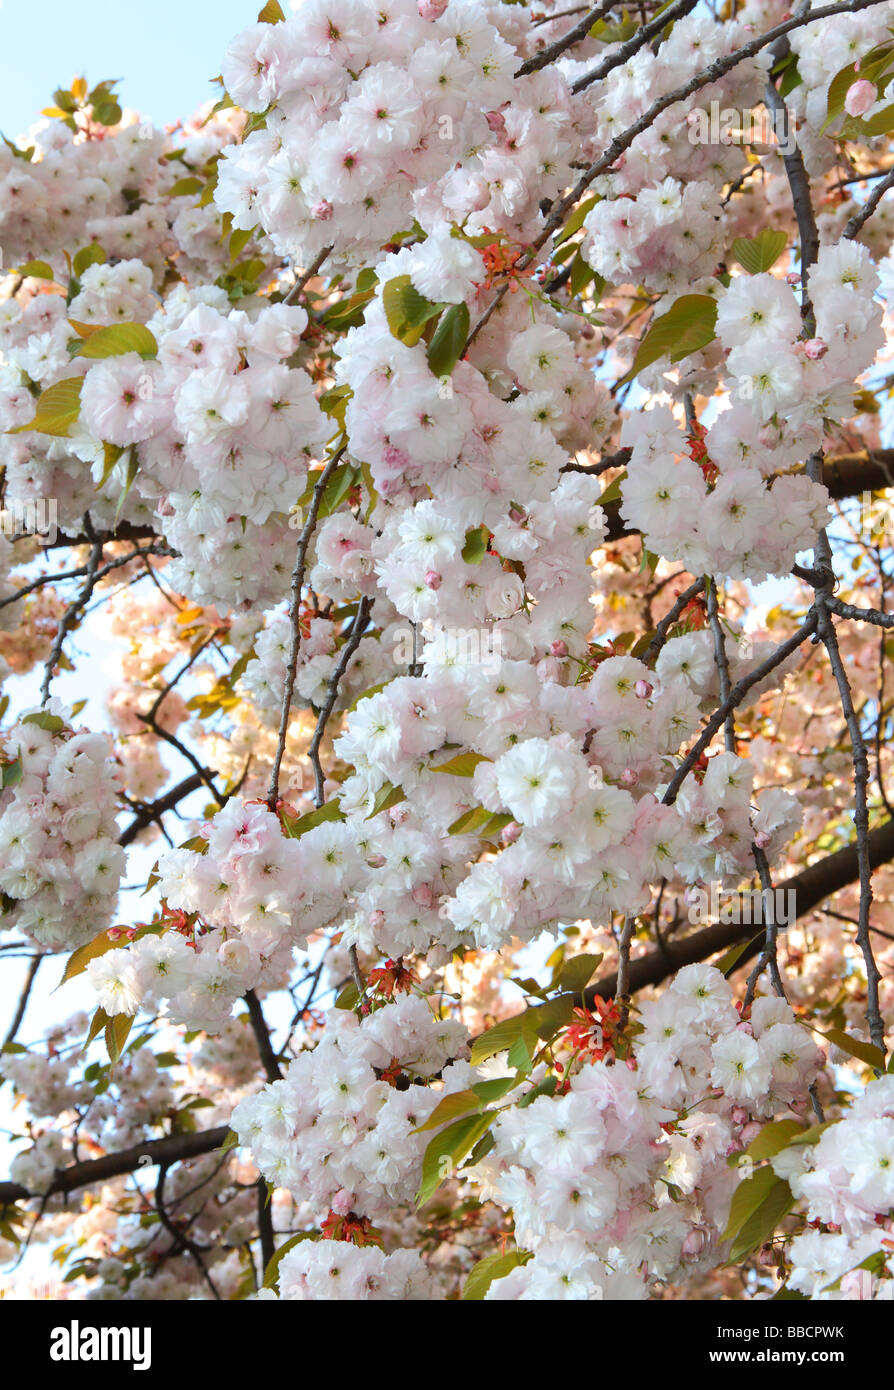 White ornamental cherry blossom Stock Photo